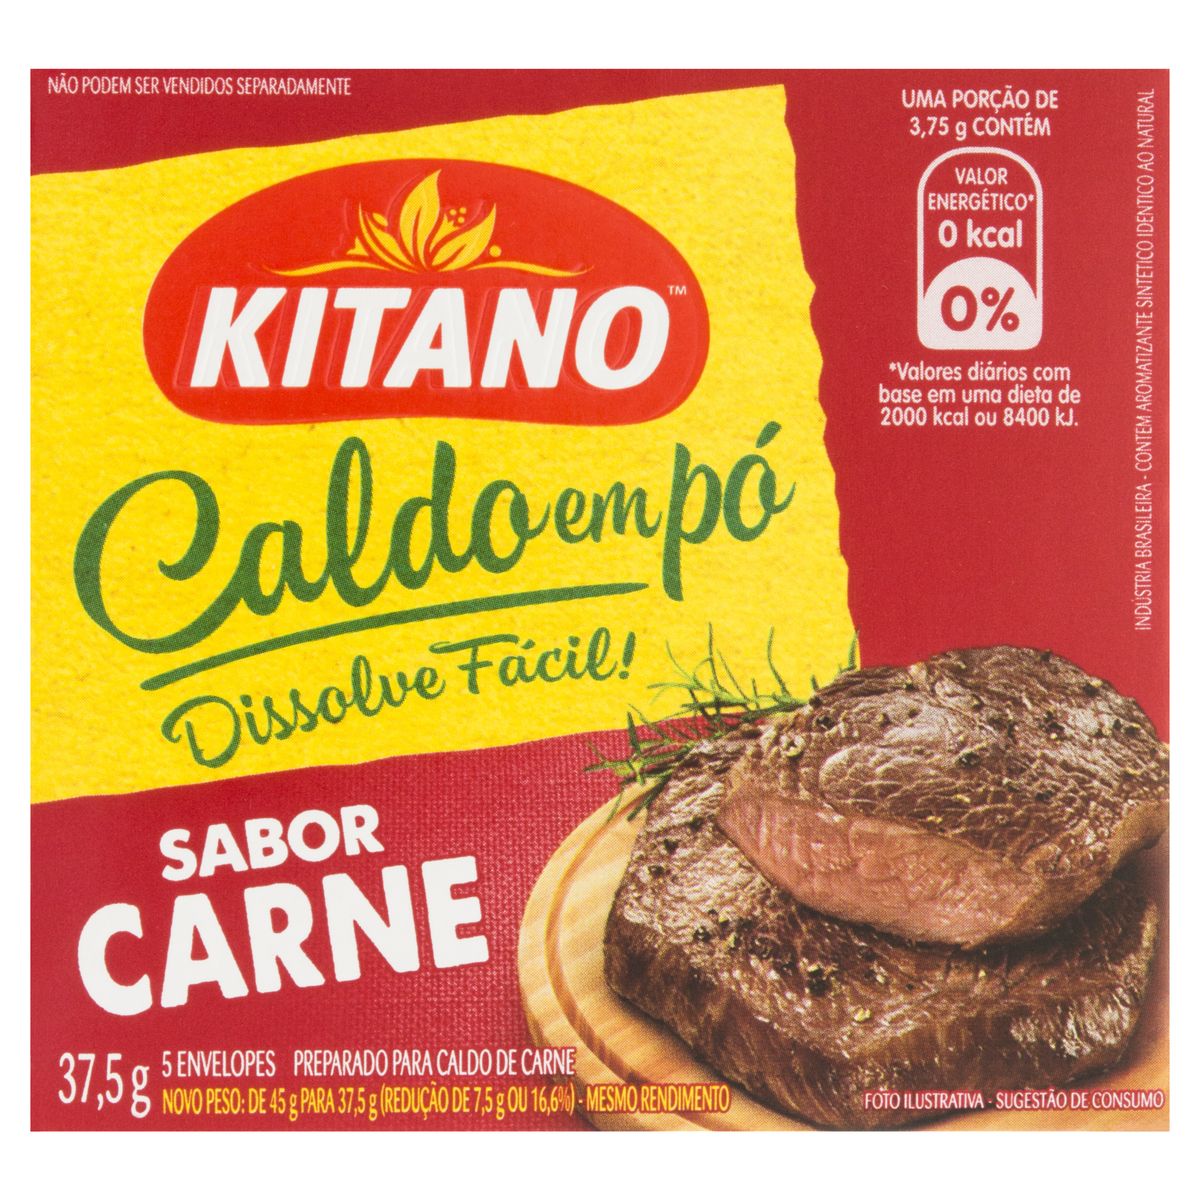 Caldo Pó Carne Kitano Caixa 37,5g 5 Unidades image number 0